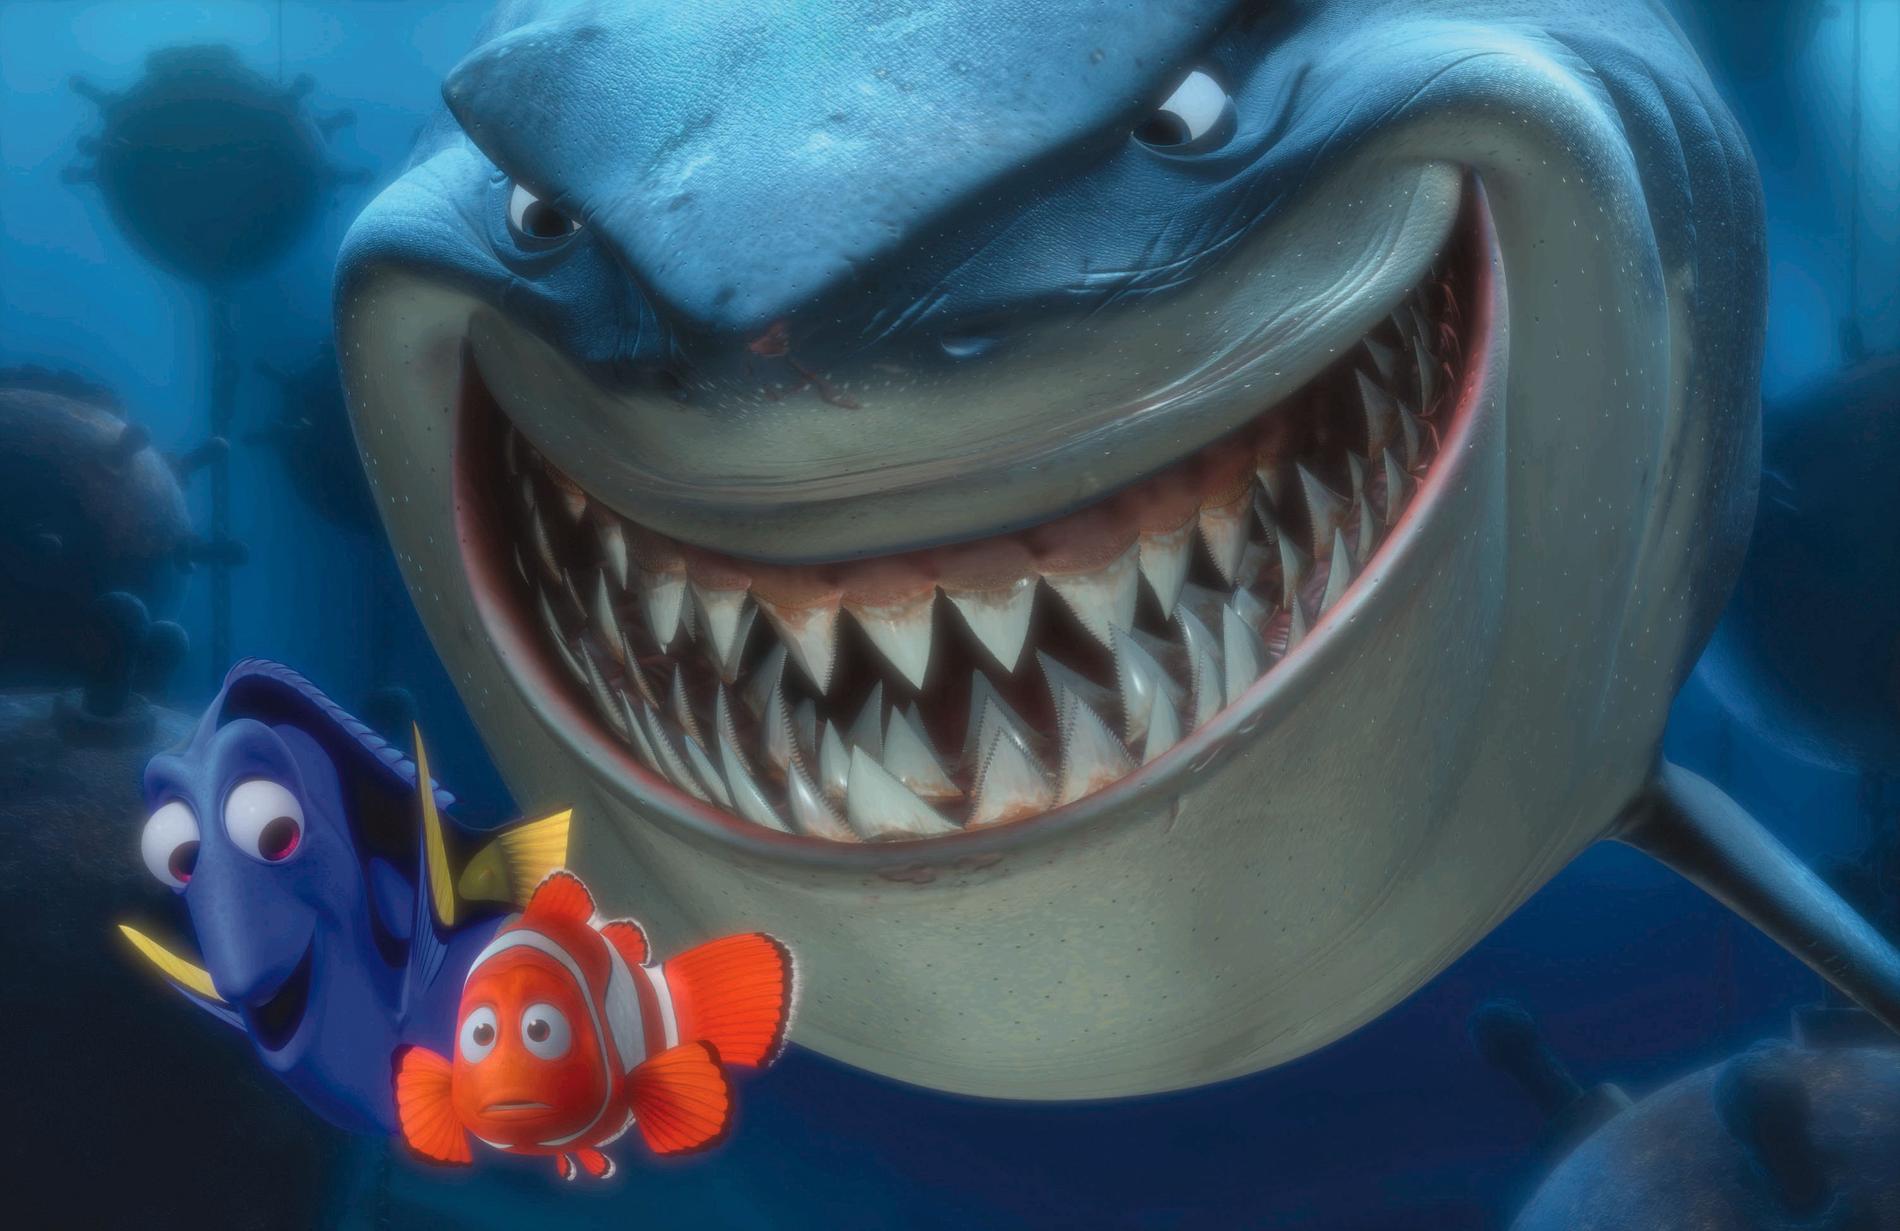 I «Oppdrag Nemo» dukker flere velkjente Disney-karakterer opp. Se punkt 3! 